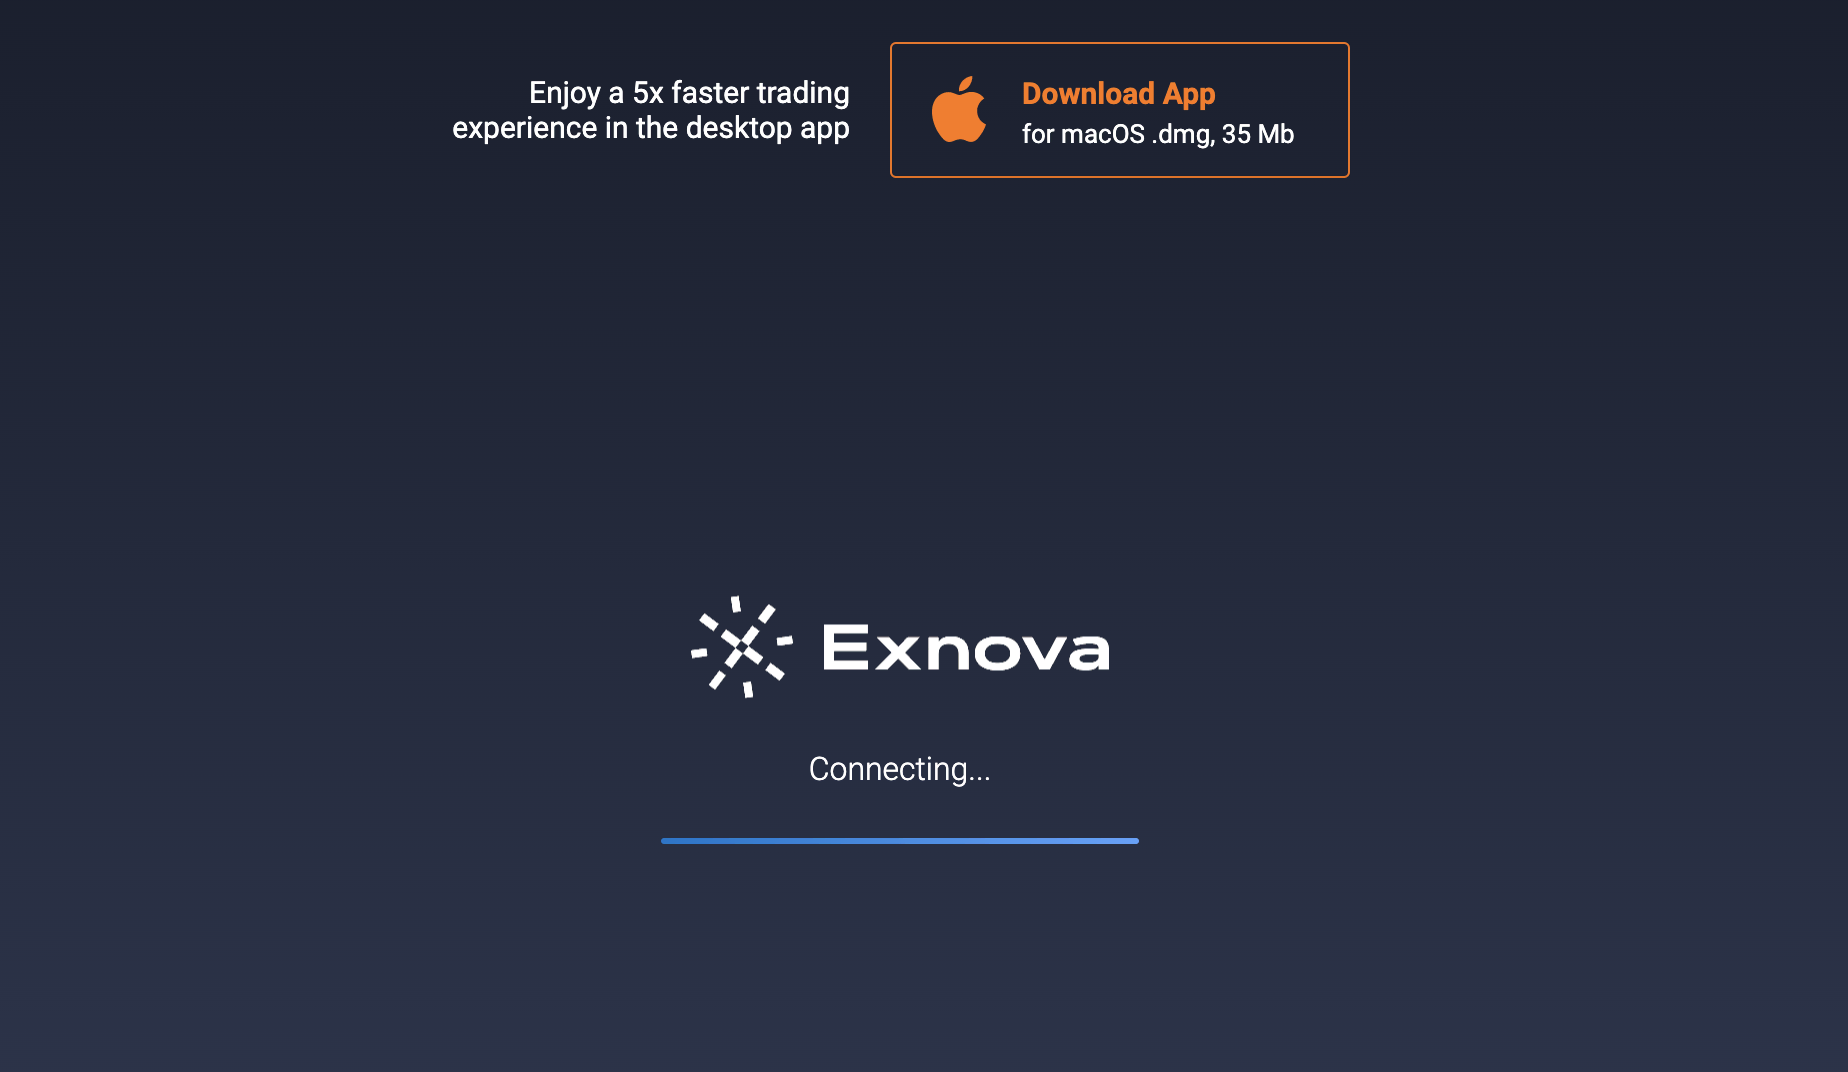 Sådan downloader du Exnova-mobilappen